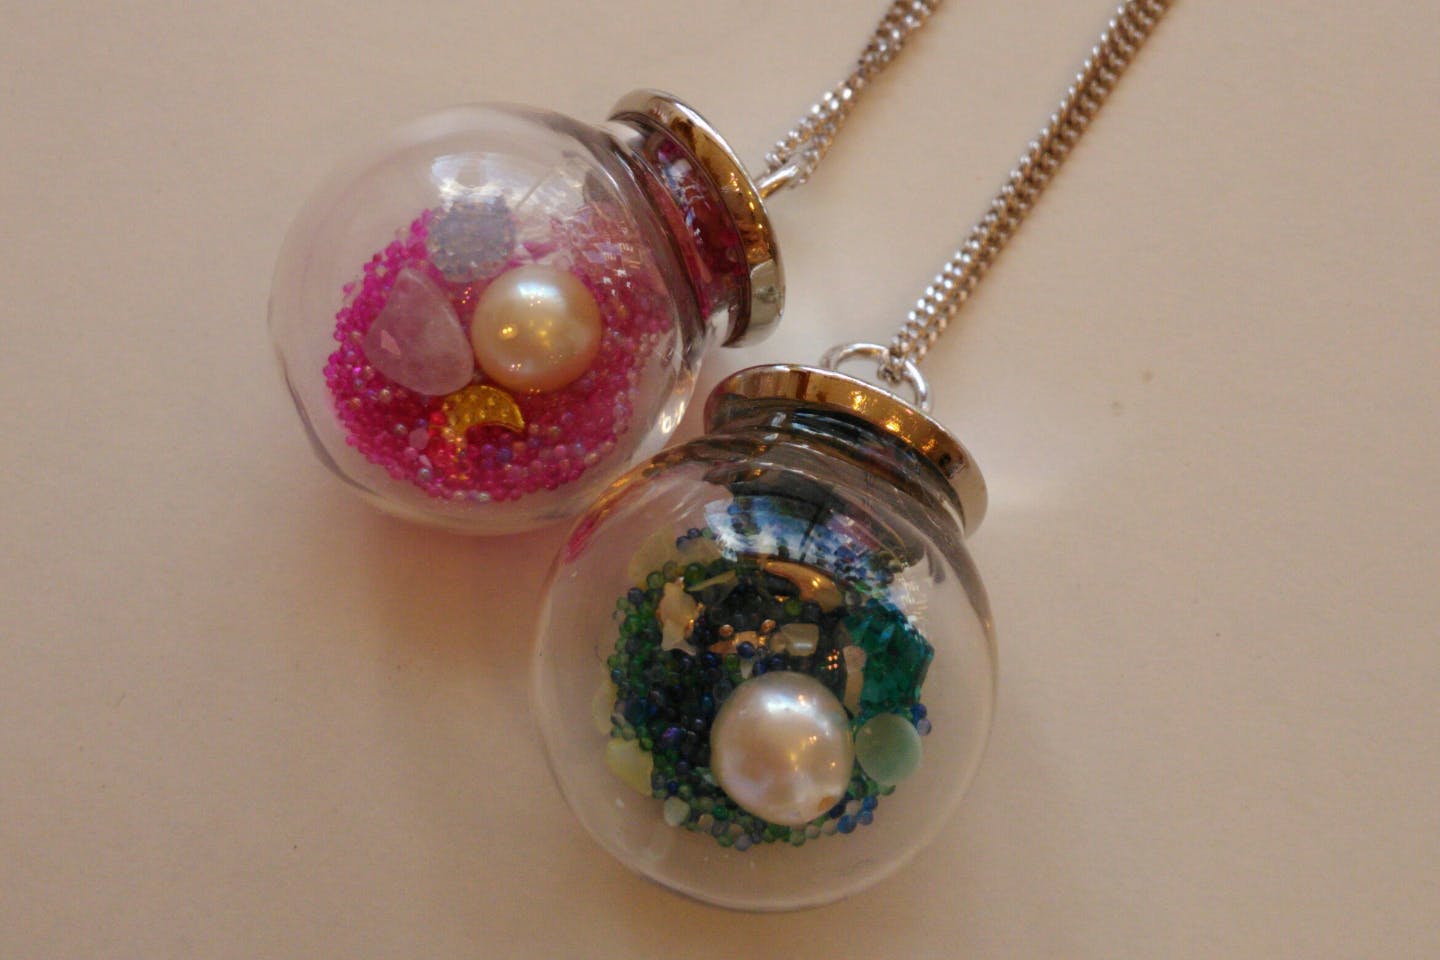 【三重・伊勢・ペンダント】本真珠を使った可愛いオリジナルペンダント作り（1点作成できます）